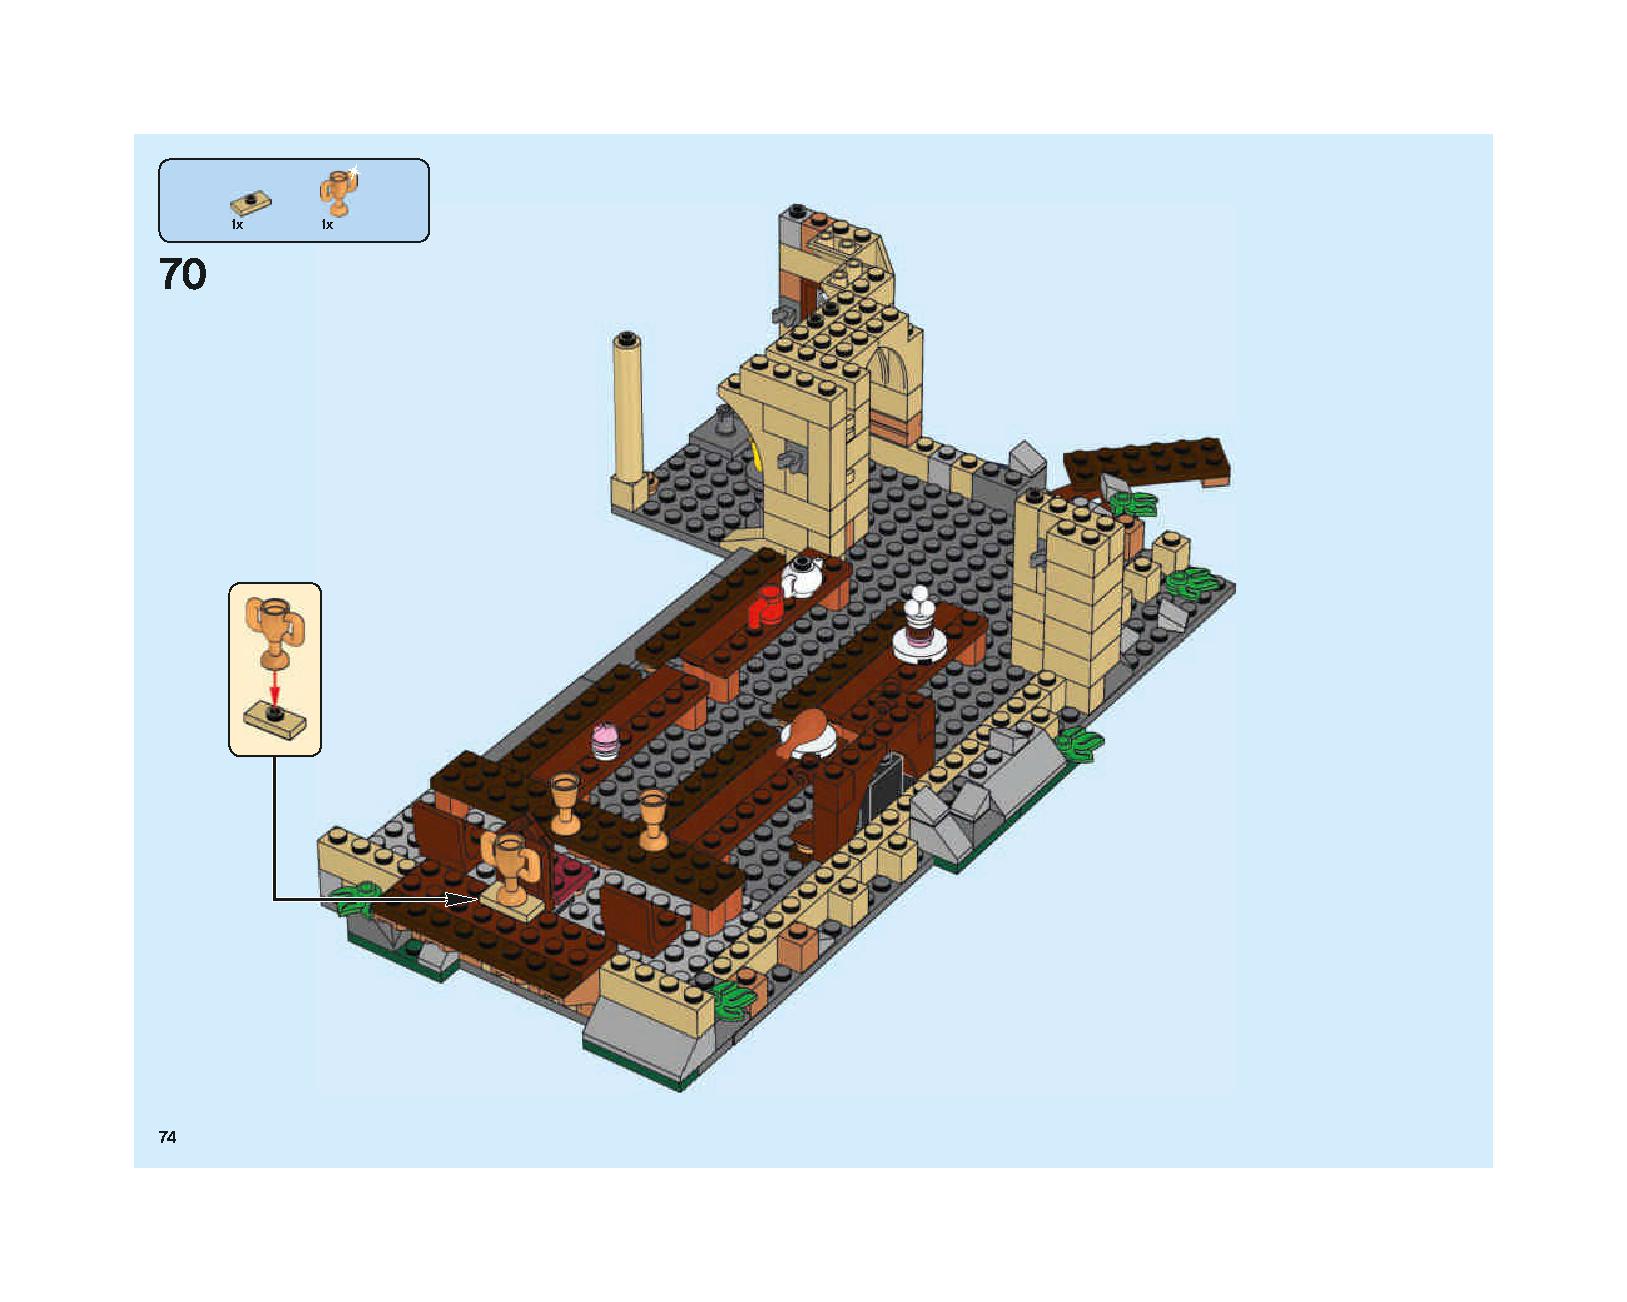 ホグワーツの大広間 75954 レゴの商品情報 レゴの説明書・組立方法 74 page